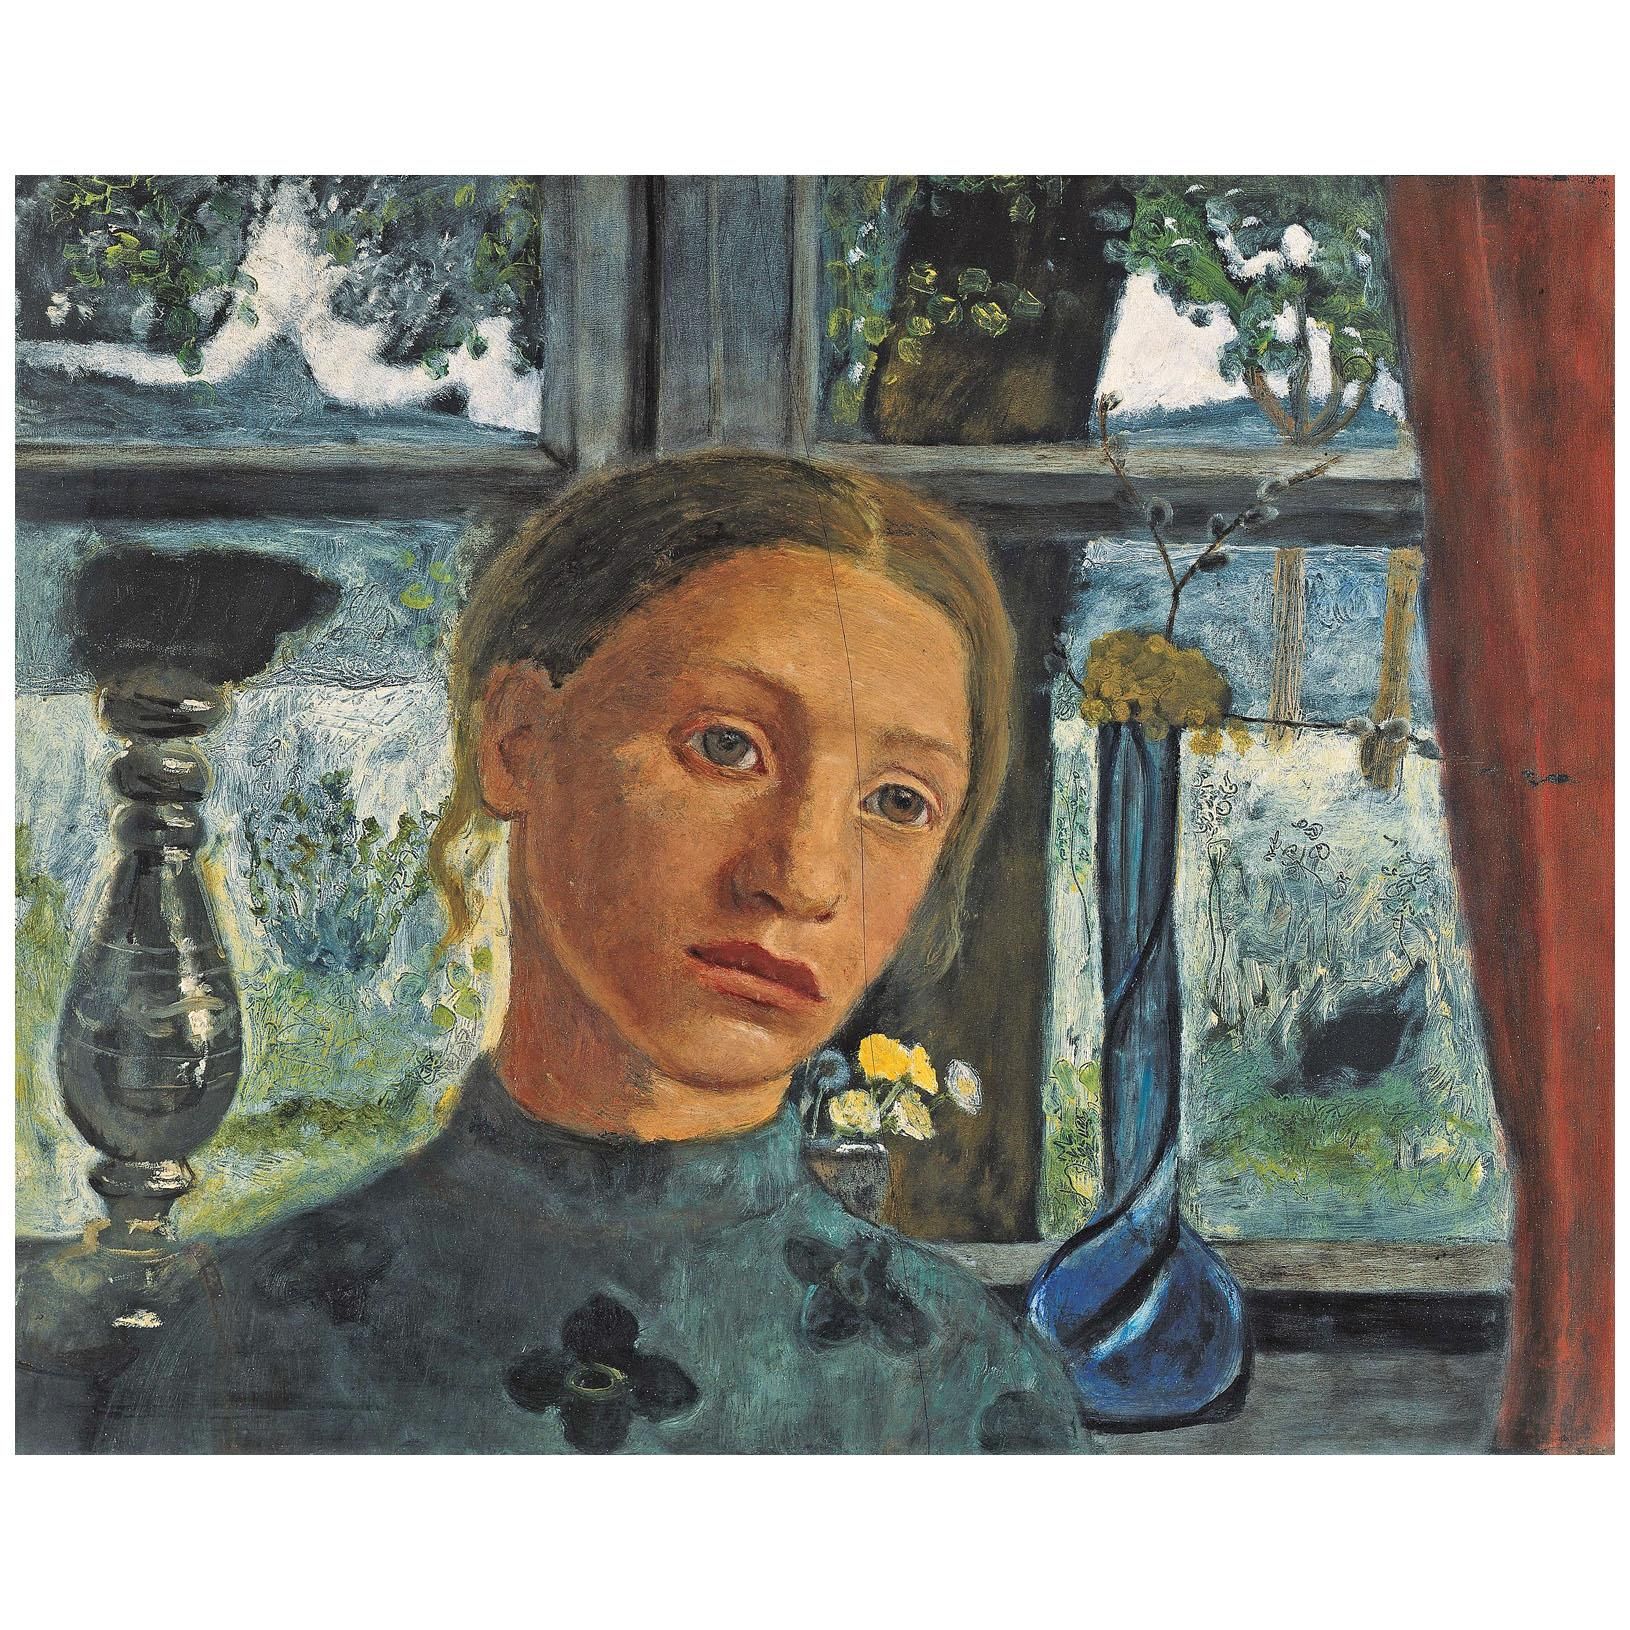 Paula Modersohn-Becker. Madchenkopf vor einem Fenster. 1902. Kunsthalle Bremen